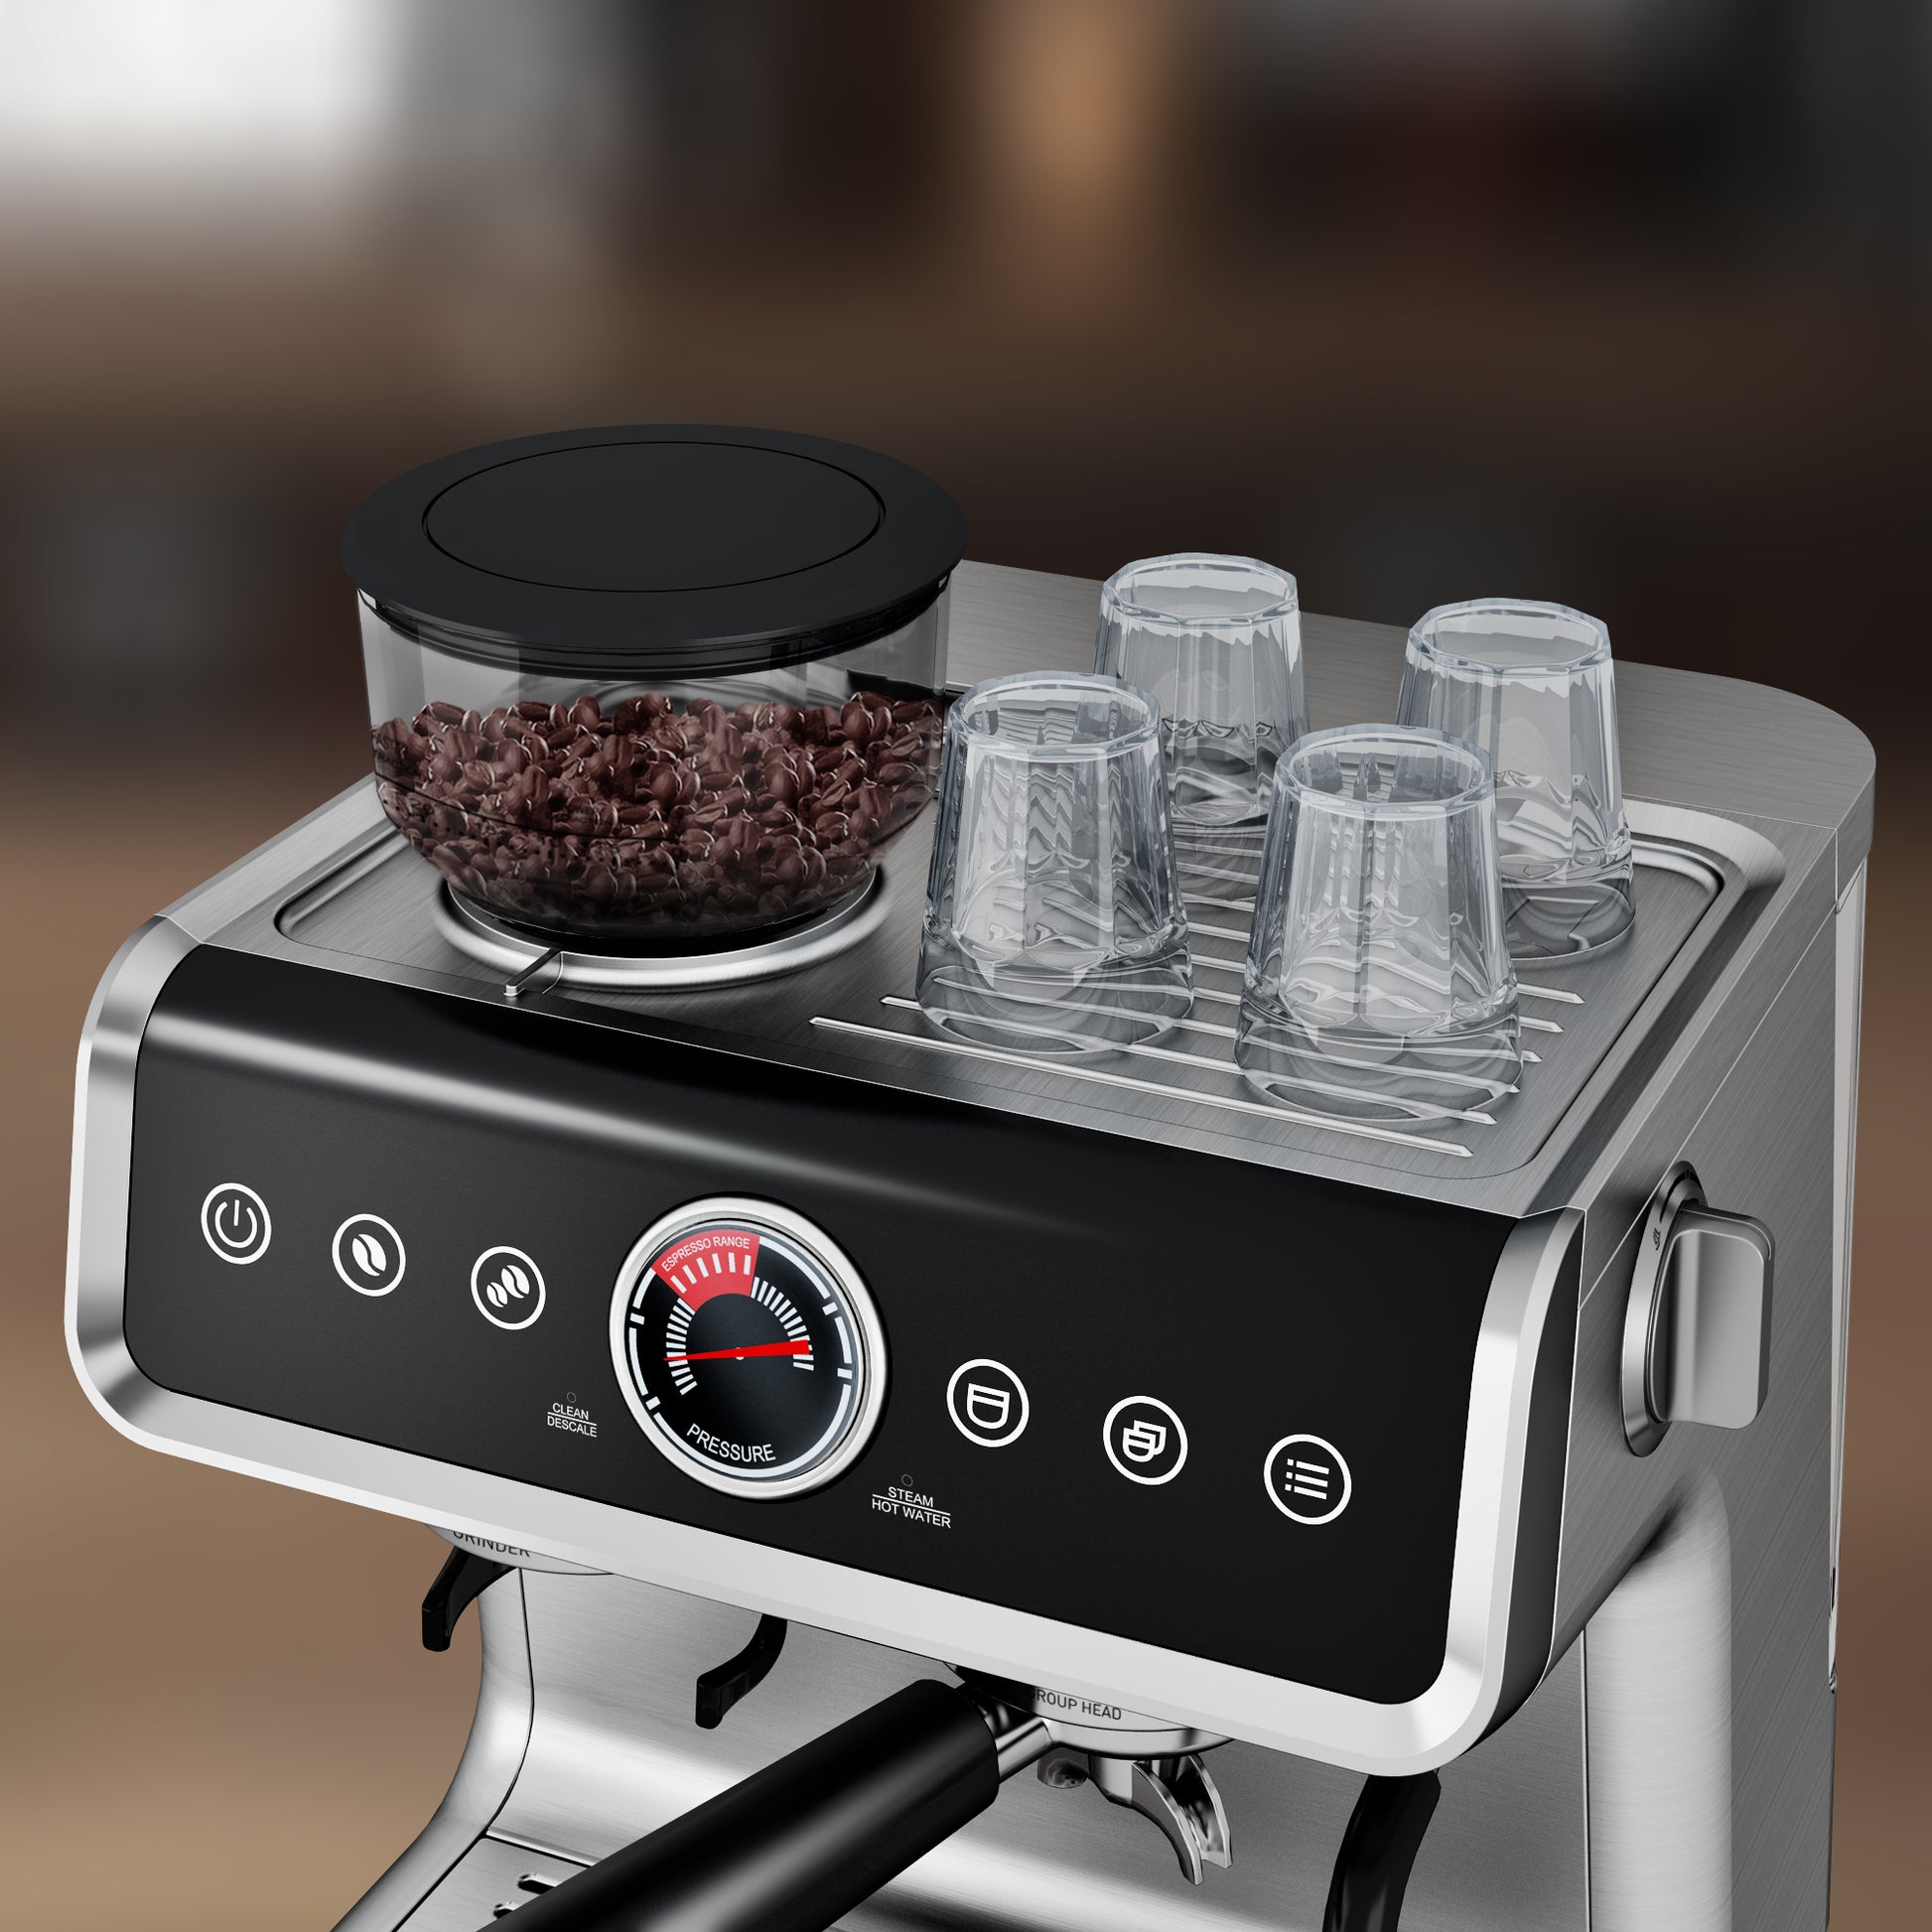 <img src="espresso machine.jpg" alt="wirsh espresso machine cup warmer"/>